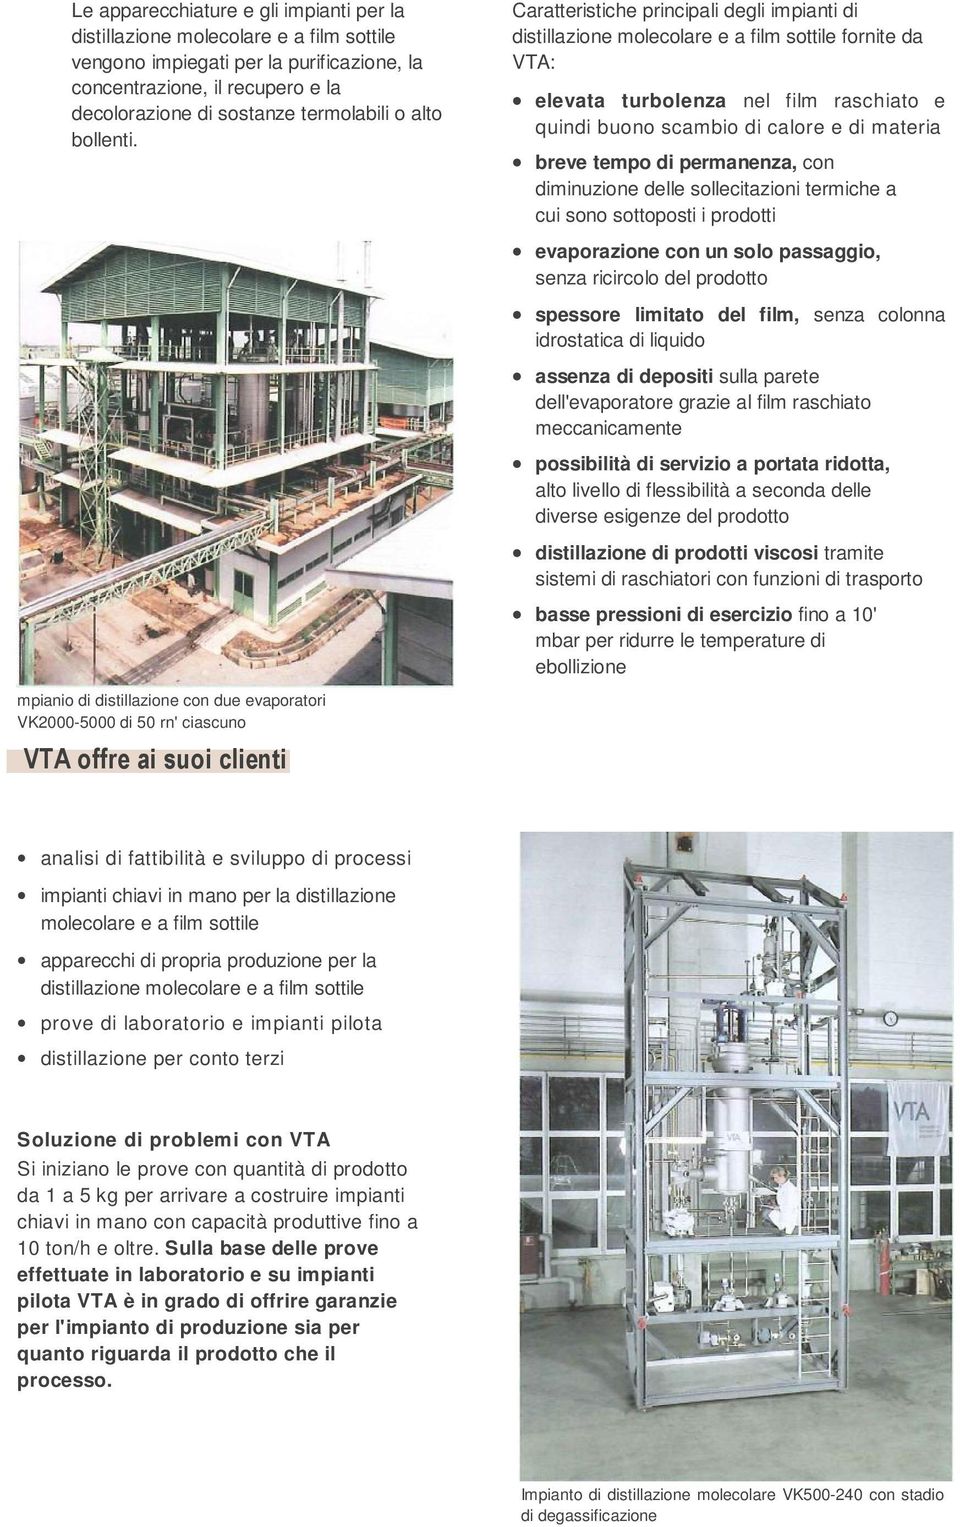 Caratteristiche principali degli impianti di distillazione molecolare e a film sottile fornite da VTA: elevata turbolenza nel film raschiato e quindi buono scambio di calore e di materia breve tempo